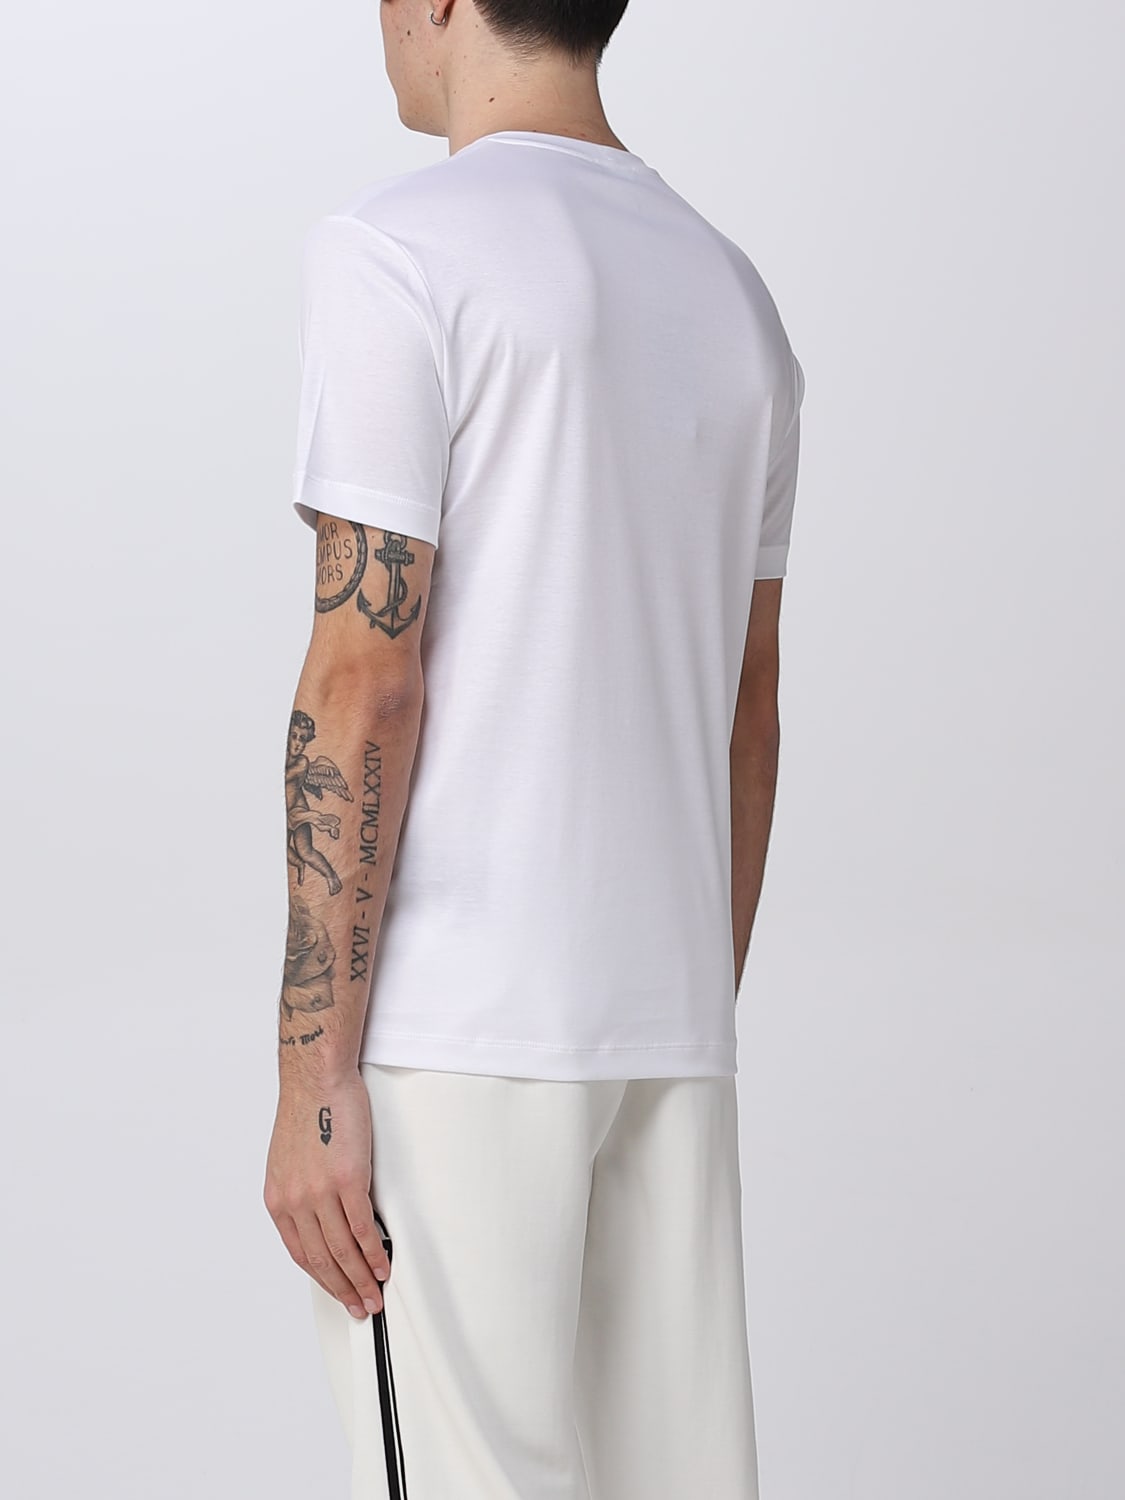 Giorgio Armaniアウトレット：Tシャツ メンズ - ホワイト | GIGLIO.COM